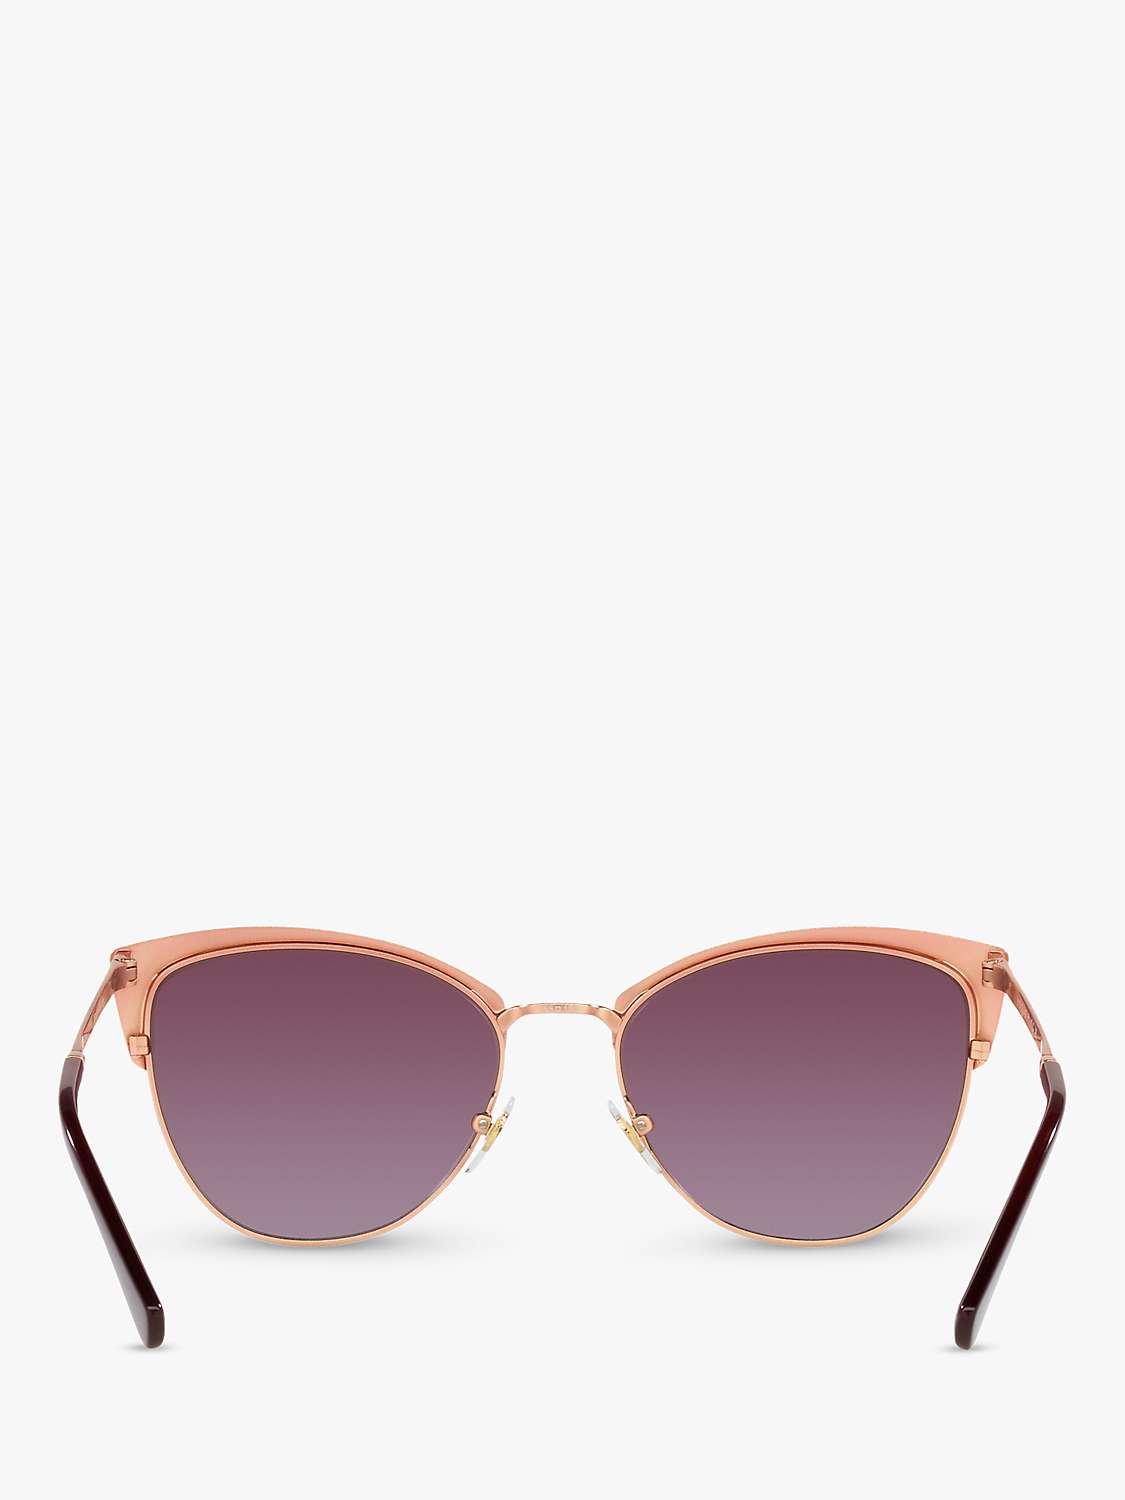 Buy Vogue VO4251S Women's Butterfly Sunglasses, Bordeaux/Violet Gradient Online at johnlewis.com